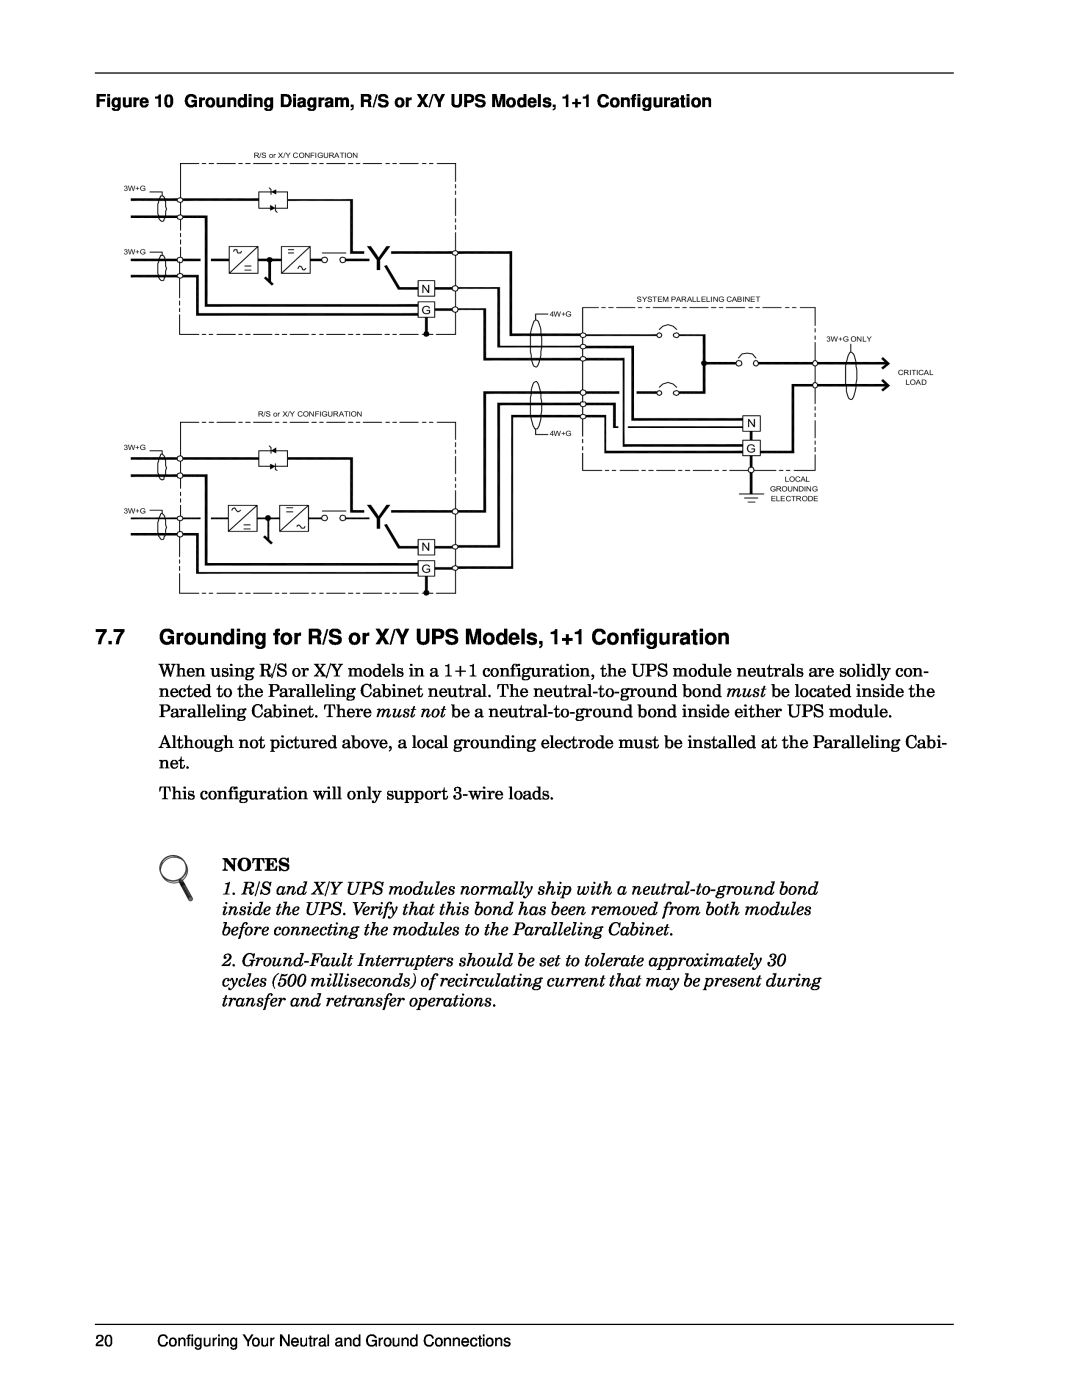 Emerson 30-130 kVA Grounding Diagram, R/S or X/Y UPS Models, 1+1 Configuration, 7KLVFRQILJXUDWLRQZLOORQO\VXSSRUWZLUHORDGV 